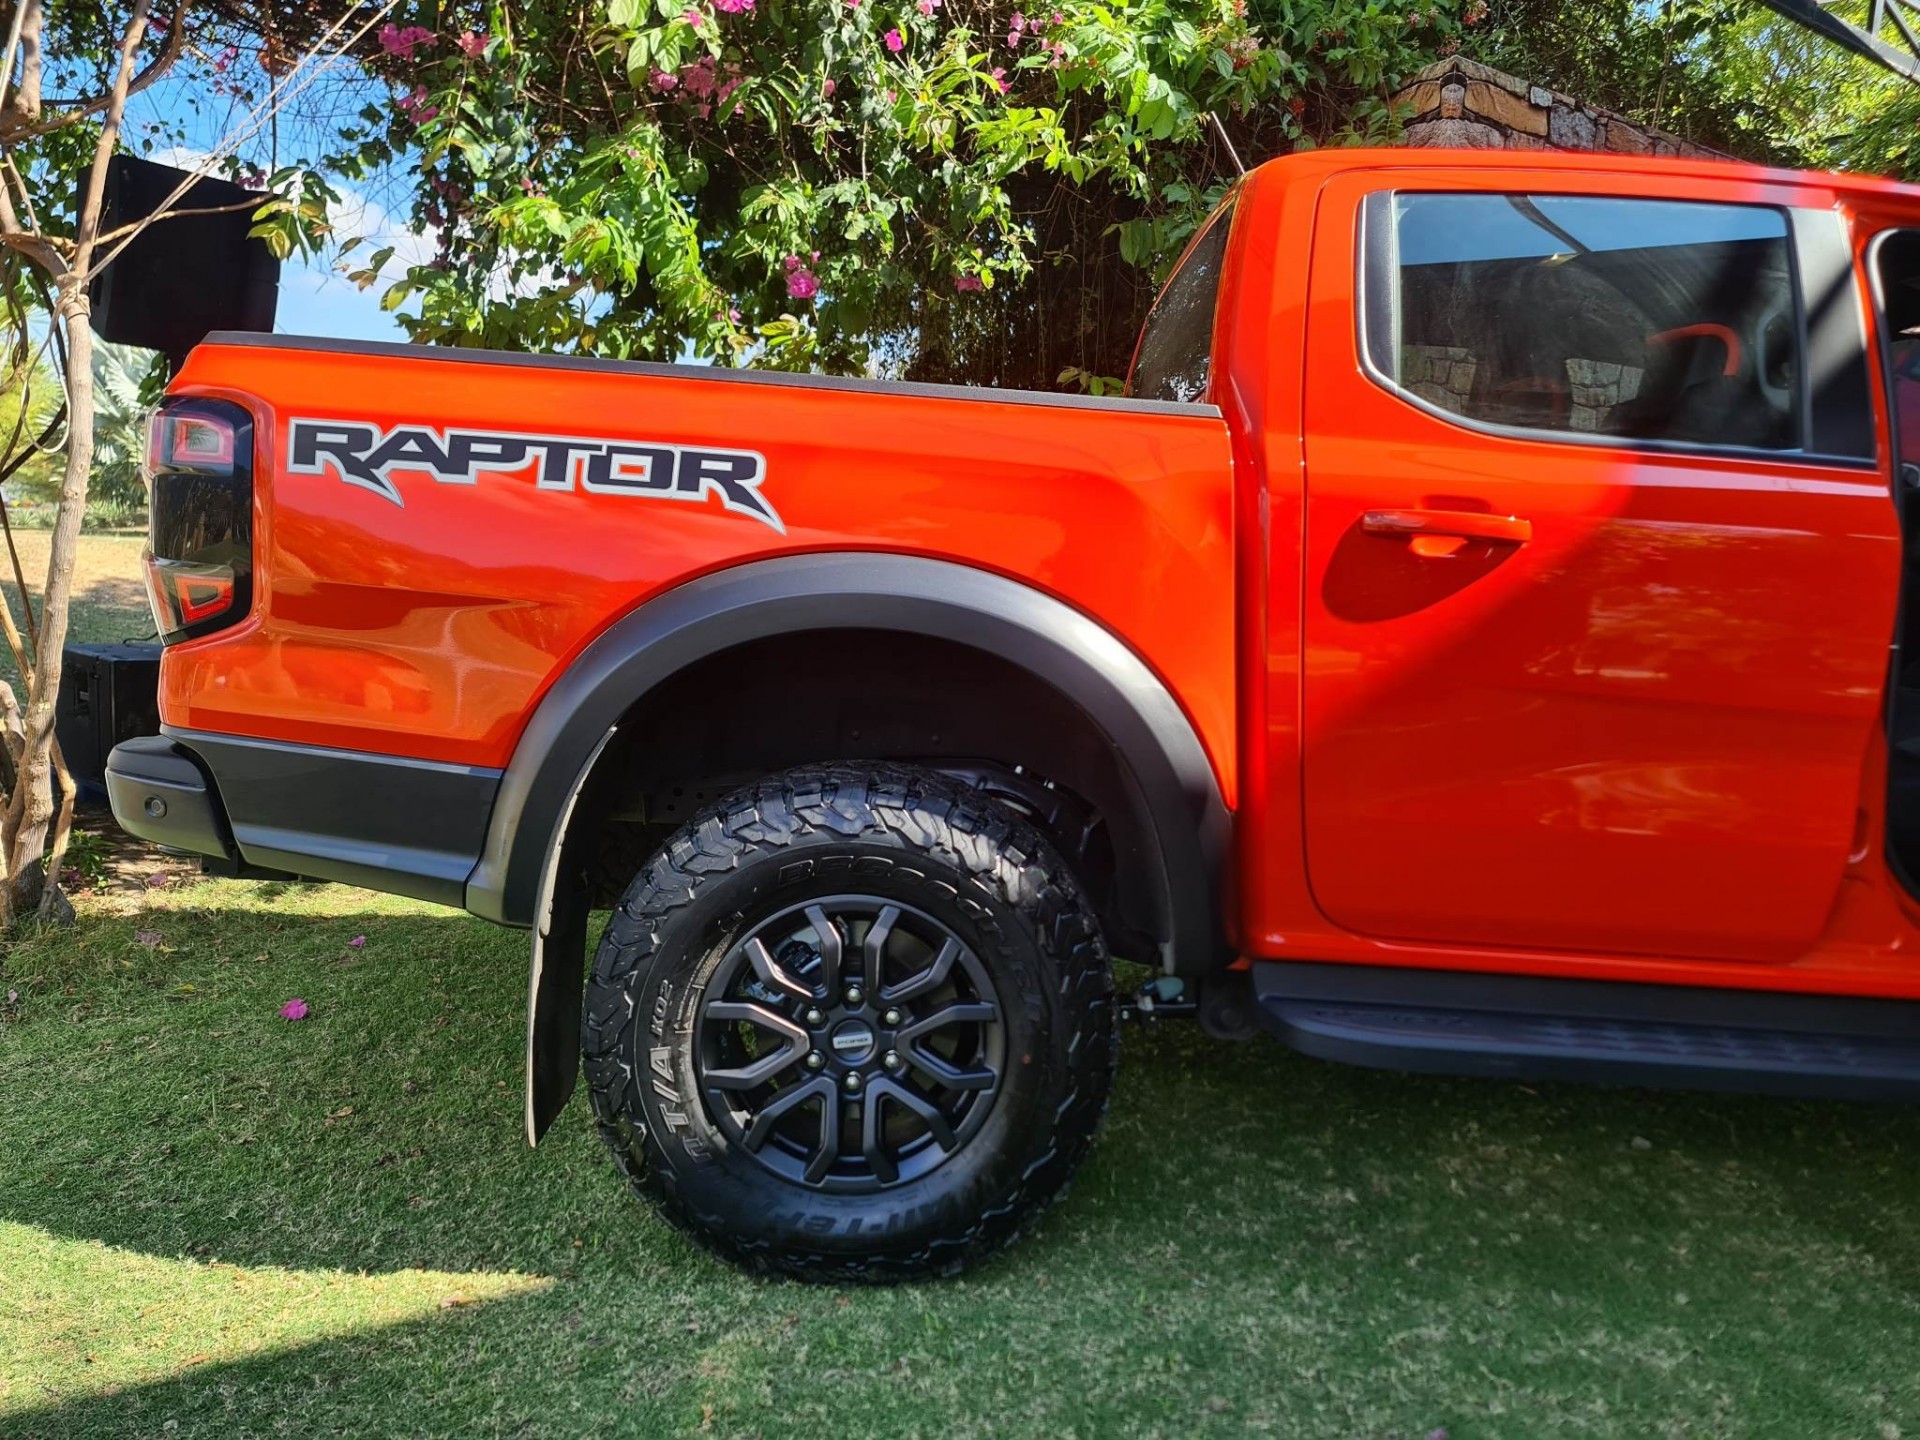 Đuôi xe được thiết kế khá cứng cáp và hài hòa với tổng thể.Bên cạnh đó, dòng chữ Ranger Raptor được khắc nổi bật trên nắp thùng xe nhằm tạo điểm nhấn.